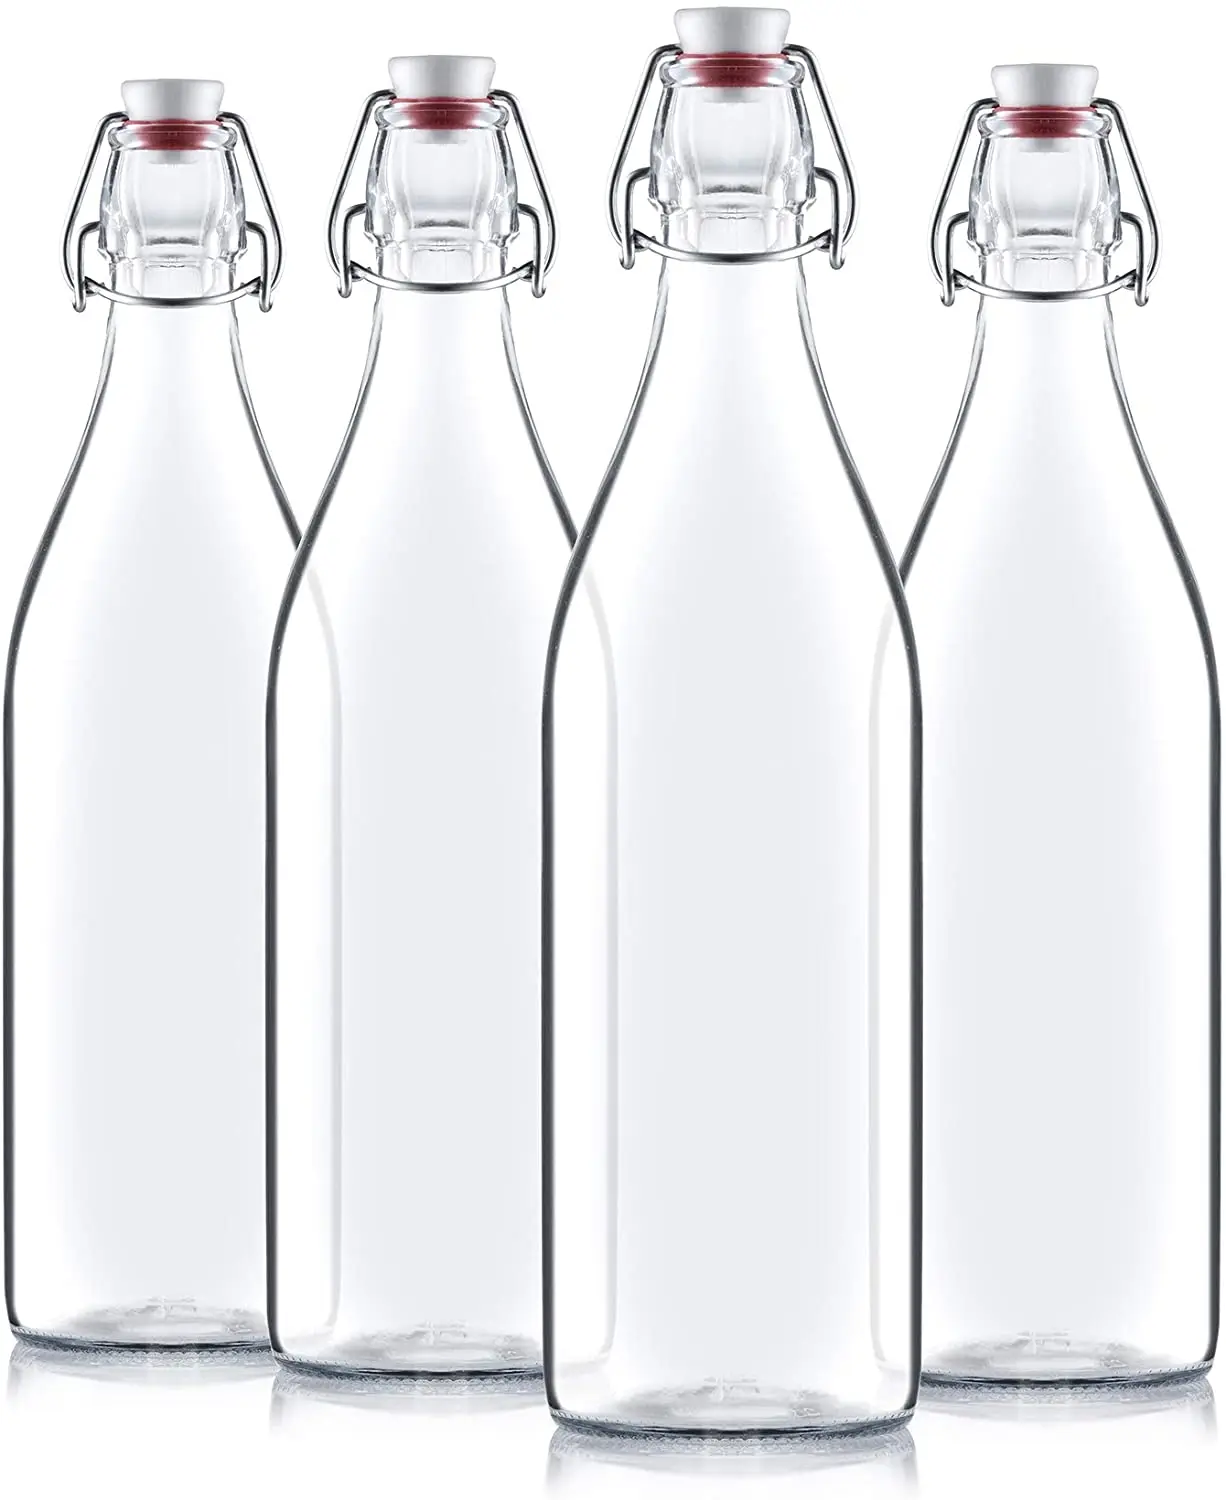 Большая стеклянная бутылка. Стеклянная бутылка. Стеклянная бутылка для воды. Бутылка 330 мл, прозрачная. Итальянская вода в стеклянных бутылках.